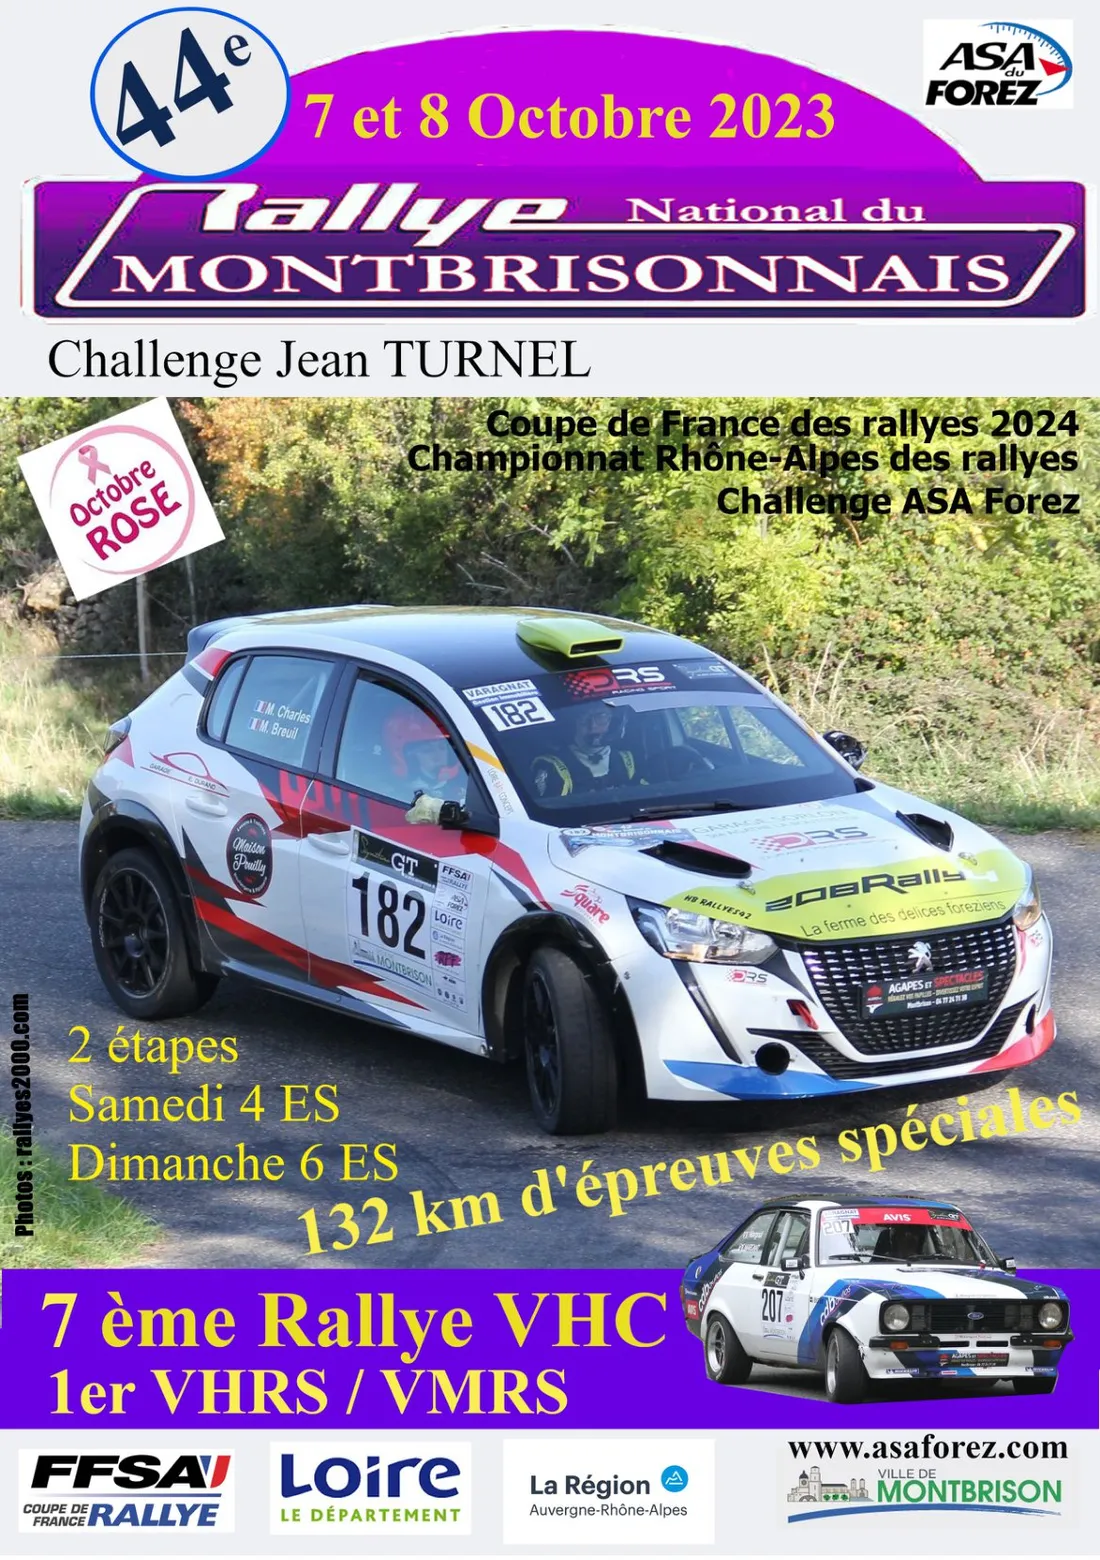 44ème édition du Rallye National du Montbrisonnais